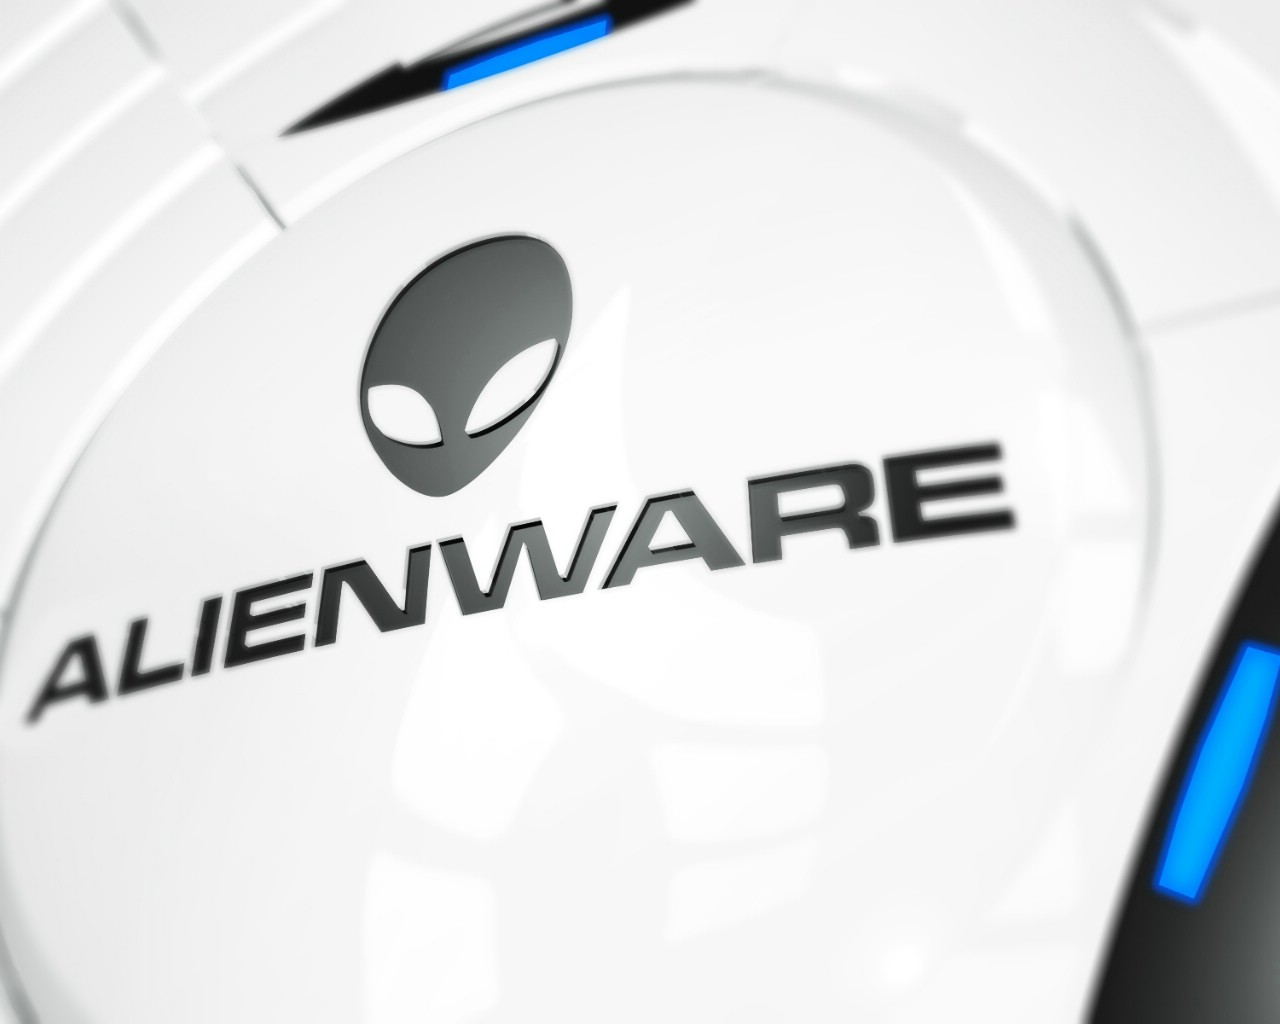 壁纸1280x1024Alienware 戴尔 壁纸5壁纸 Alienware（戴尔）壁纸 Alienware（戴尔）图片 Alienware（戴尔）素材 系统壁纸 系统图库 系统图片素材桌面壁纸